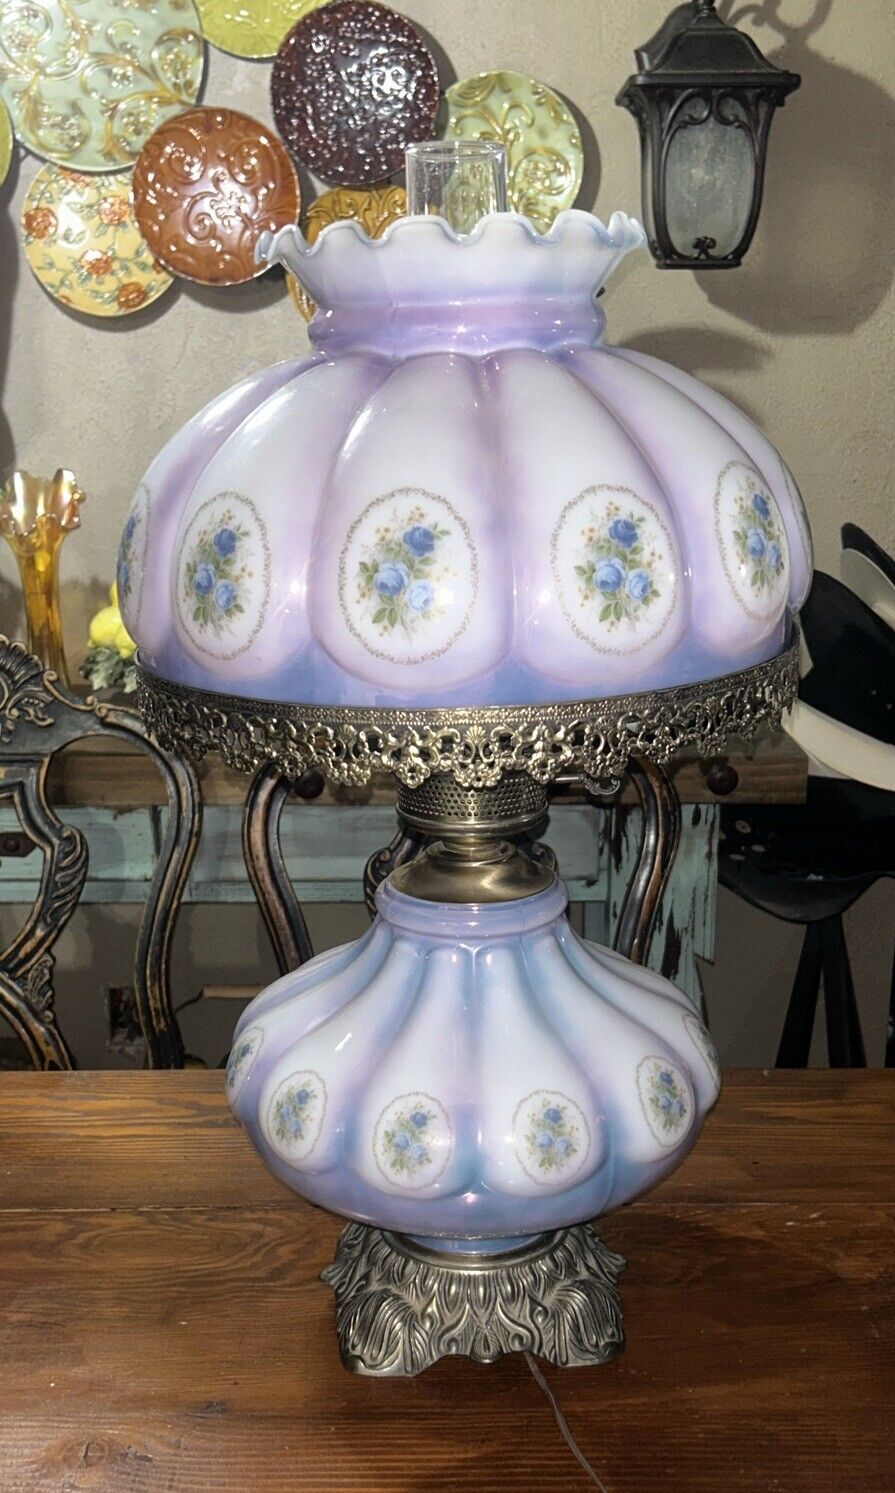 VTG Double Melon Globe Hurricane Lamp Romantic Lavender & Blue Roses Works Well